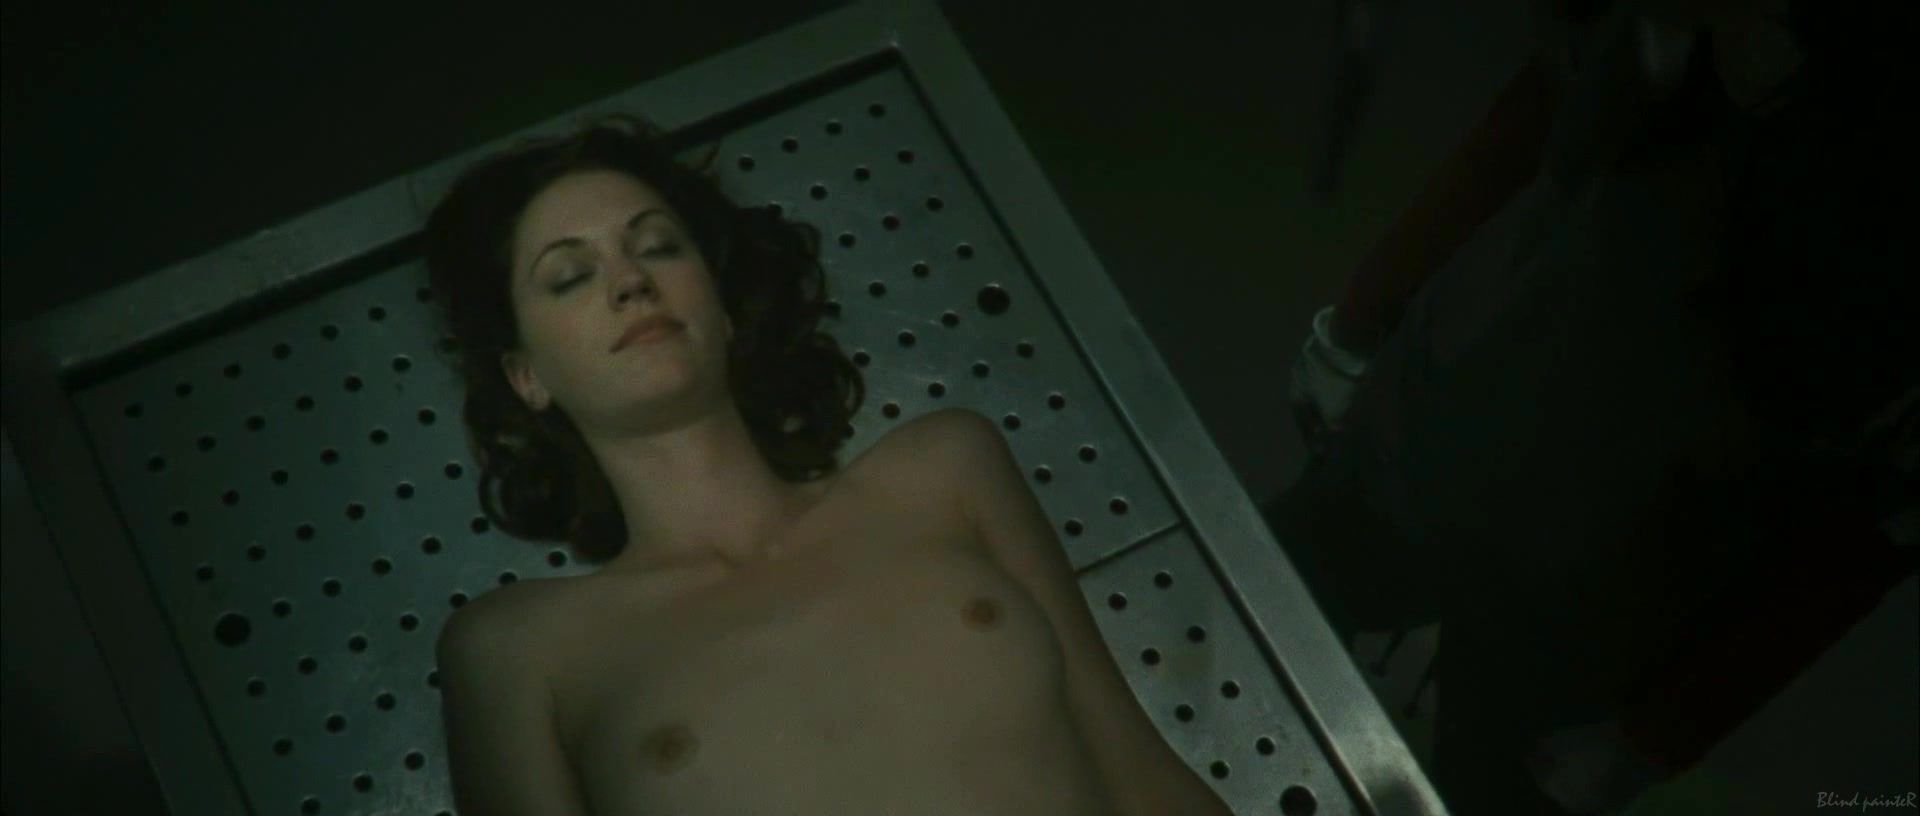 Double Blowjob Sex video Lauren Lee Smith nude - Pathology (2008) Double Penetration